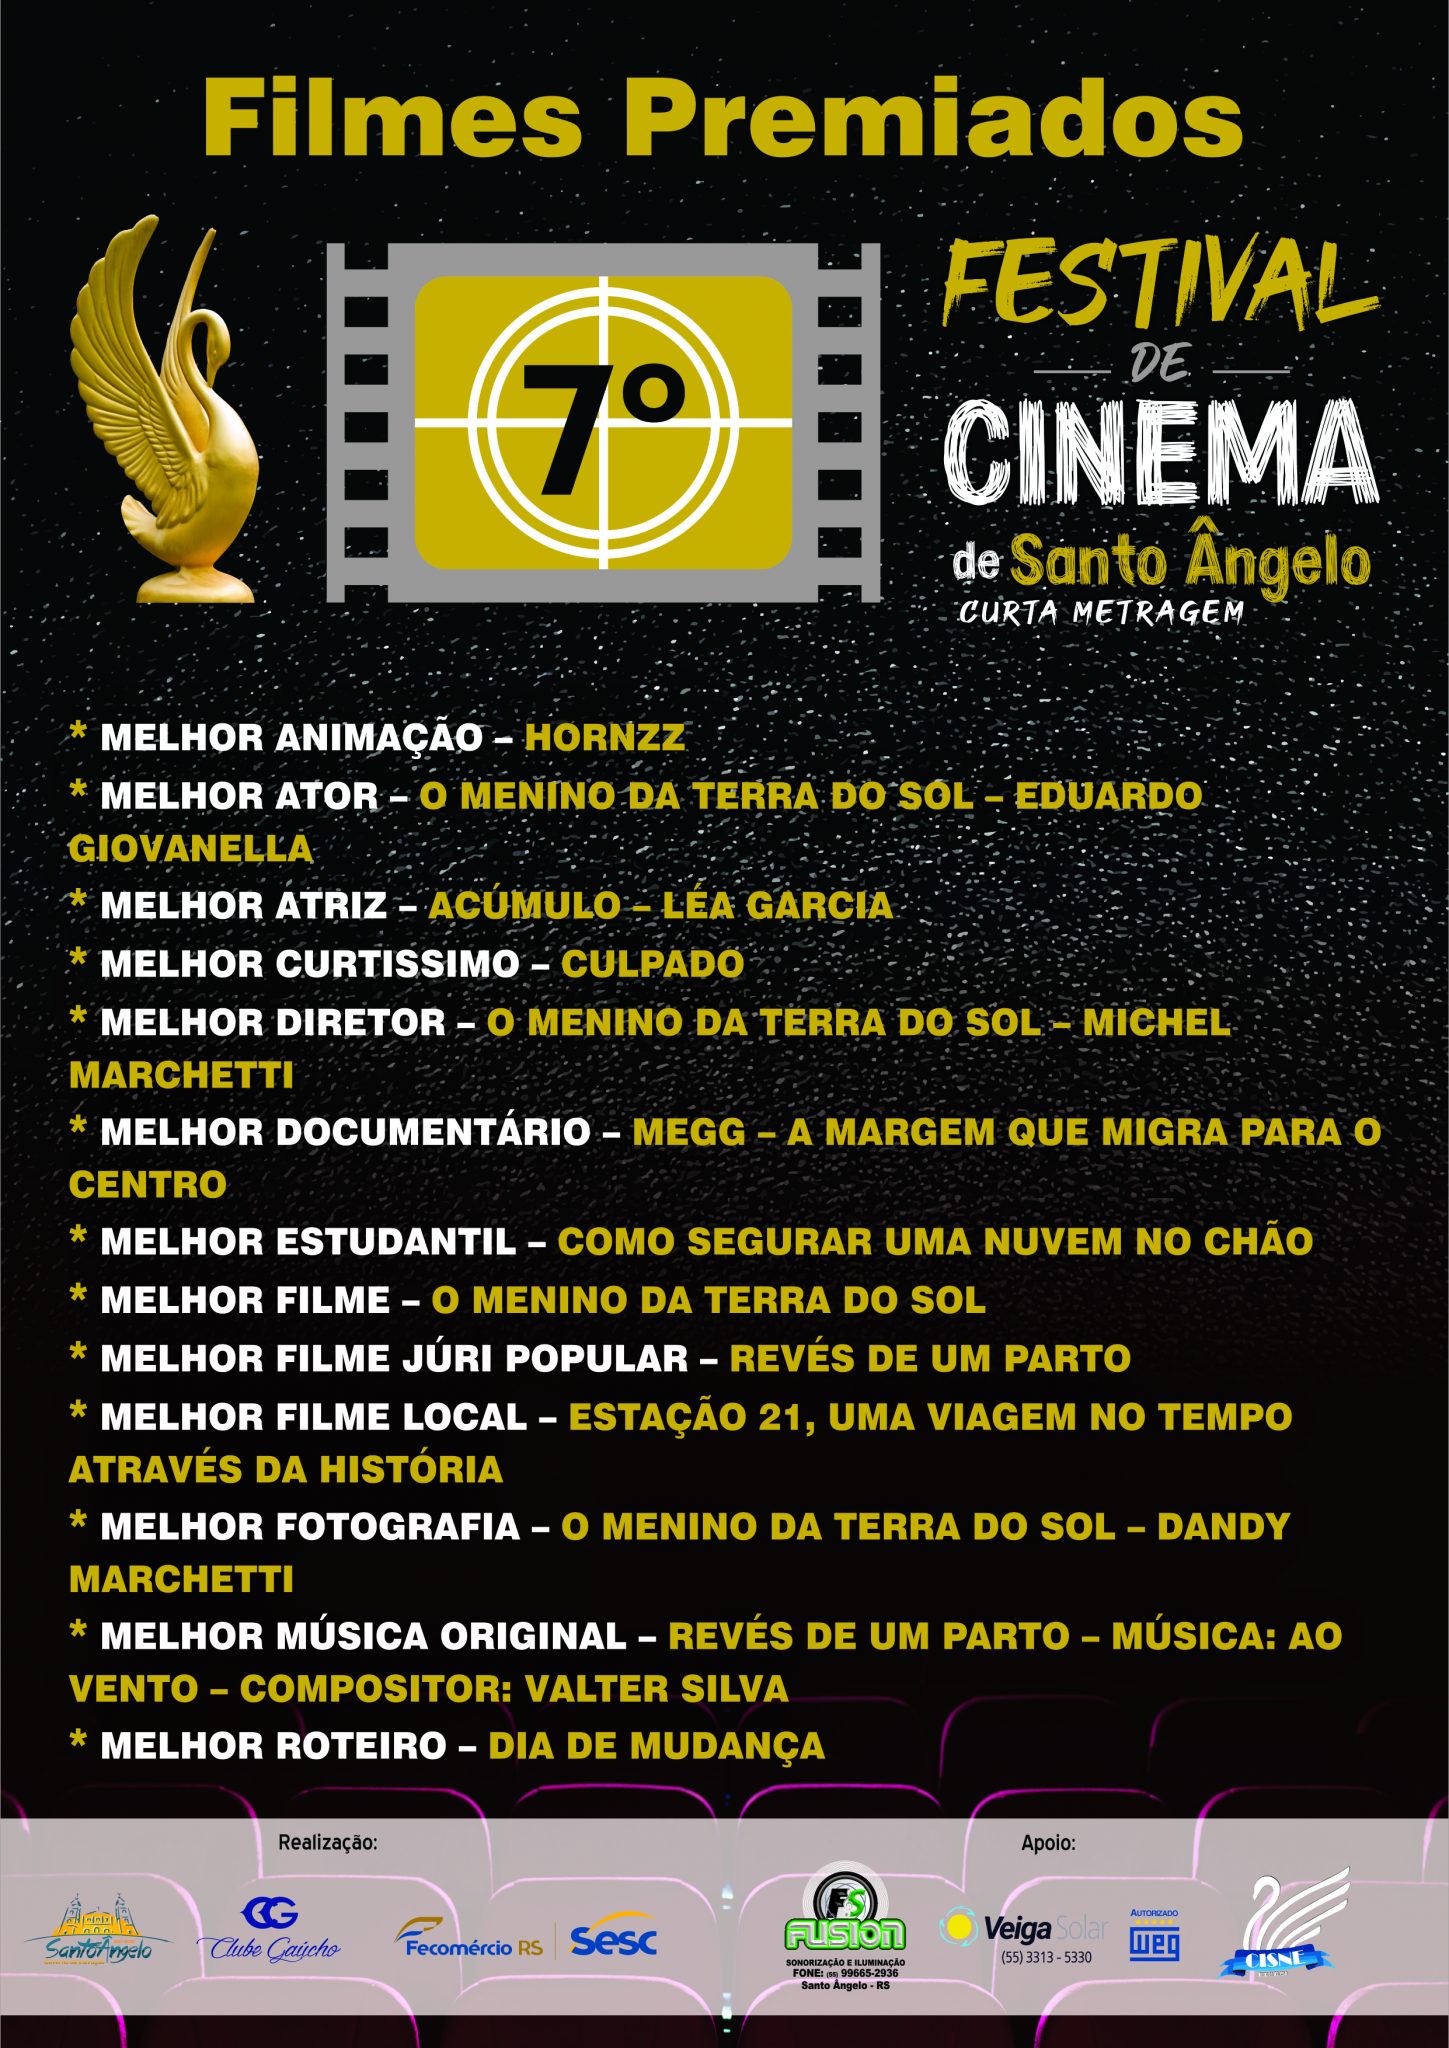 Filmes Premiados 7º Festival de Cinema de Santo Ângelo Curta Metragem